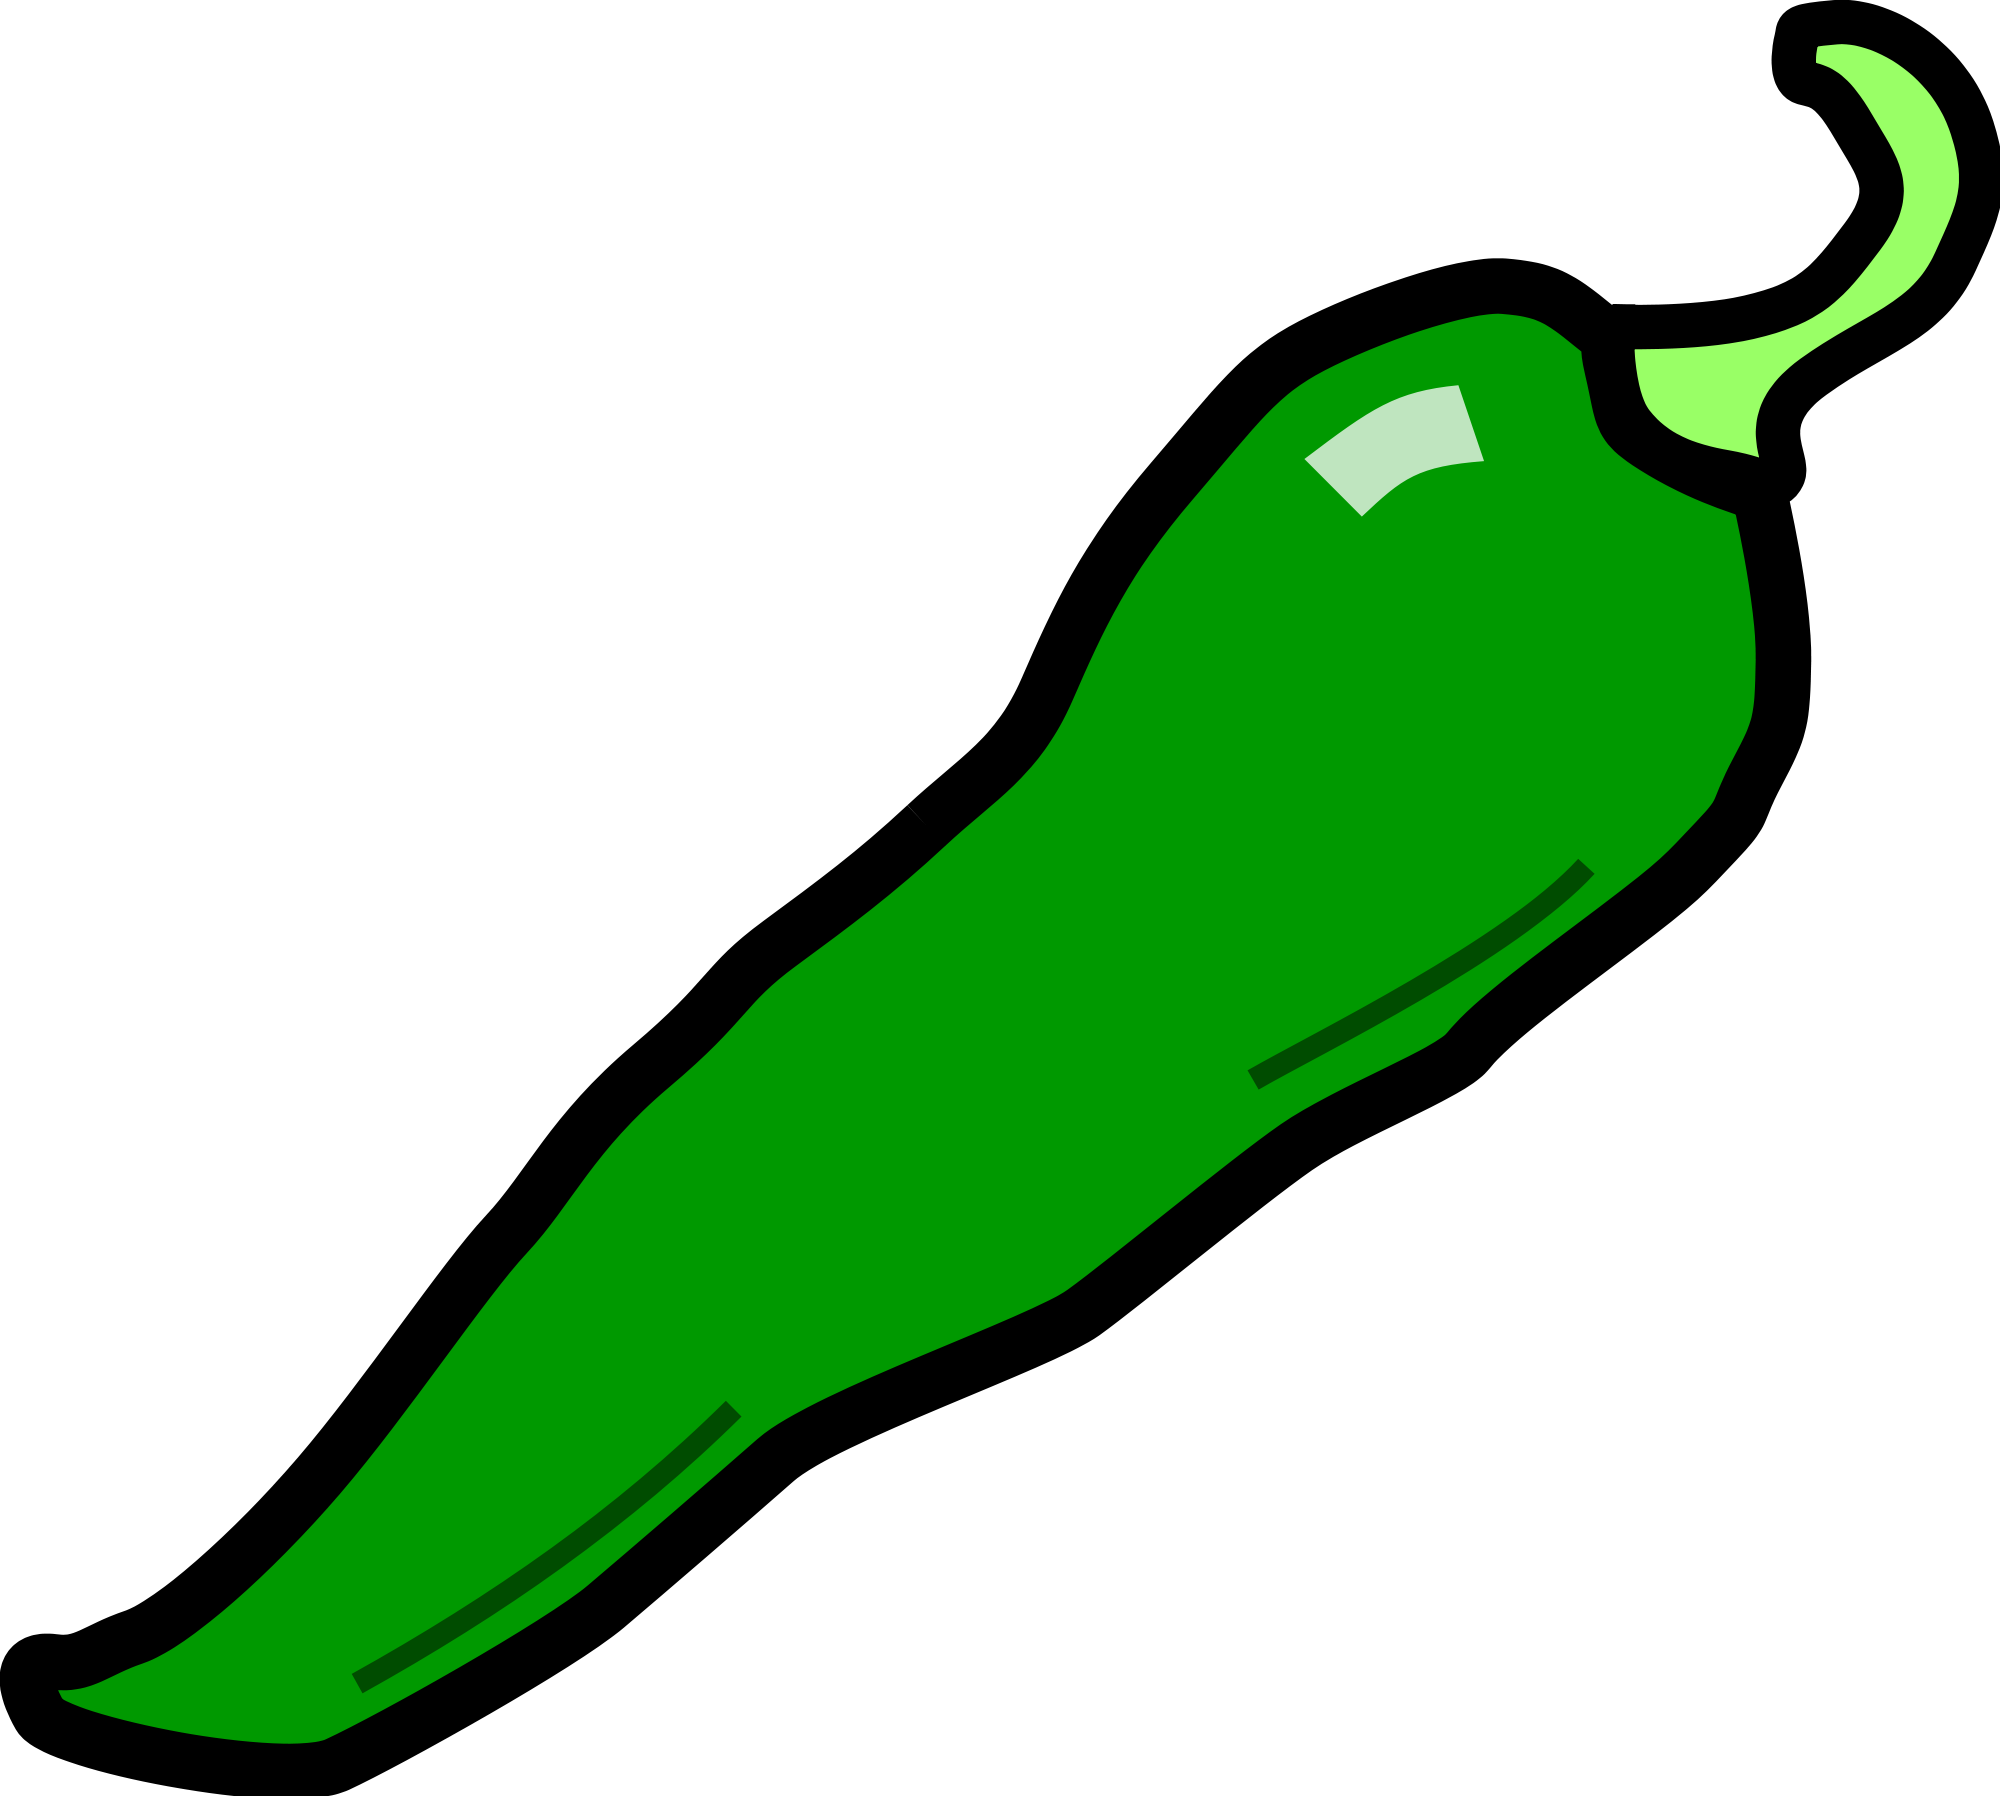 Chili green clipart - Clipartix